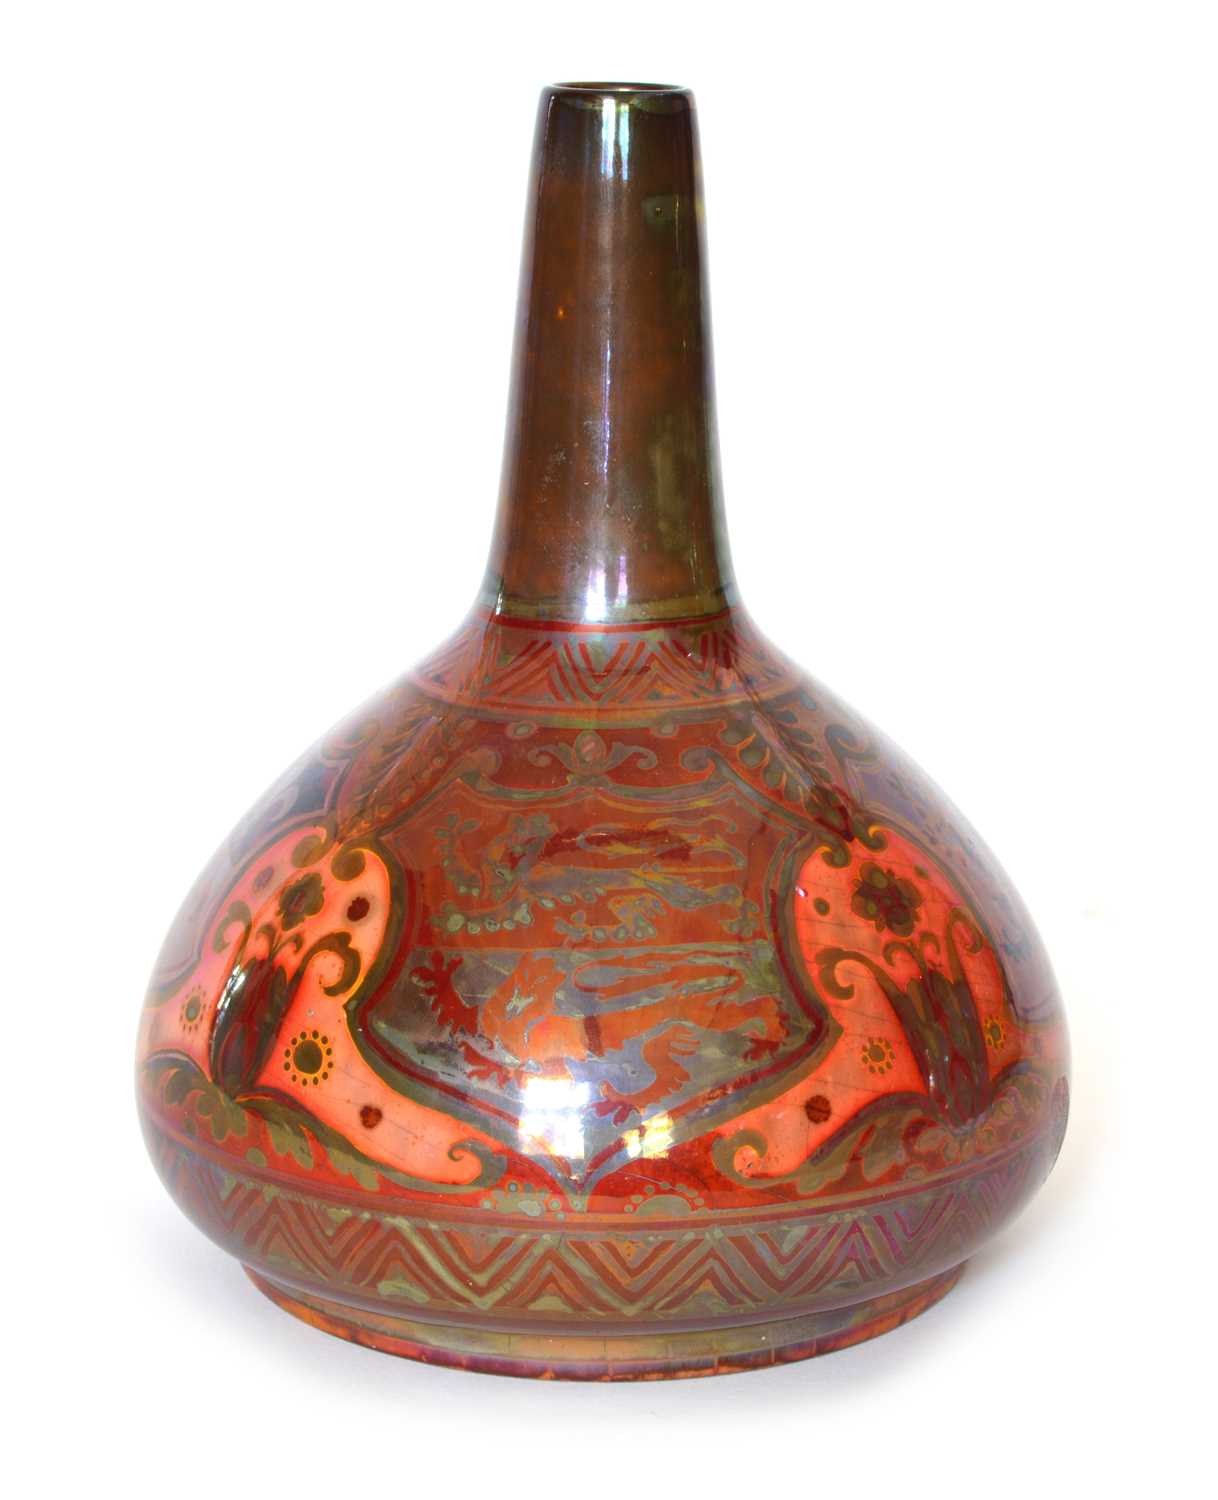 Lot 104 - Pilkington's Royal Lancastrian lustre onion-shaped vase